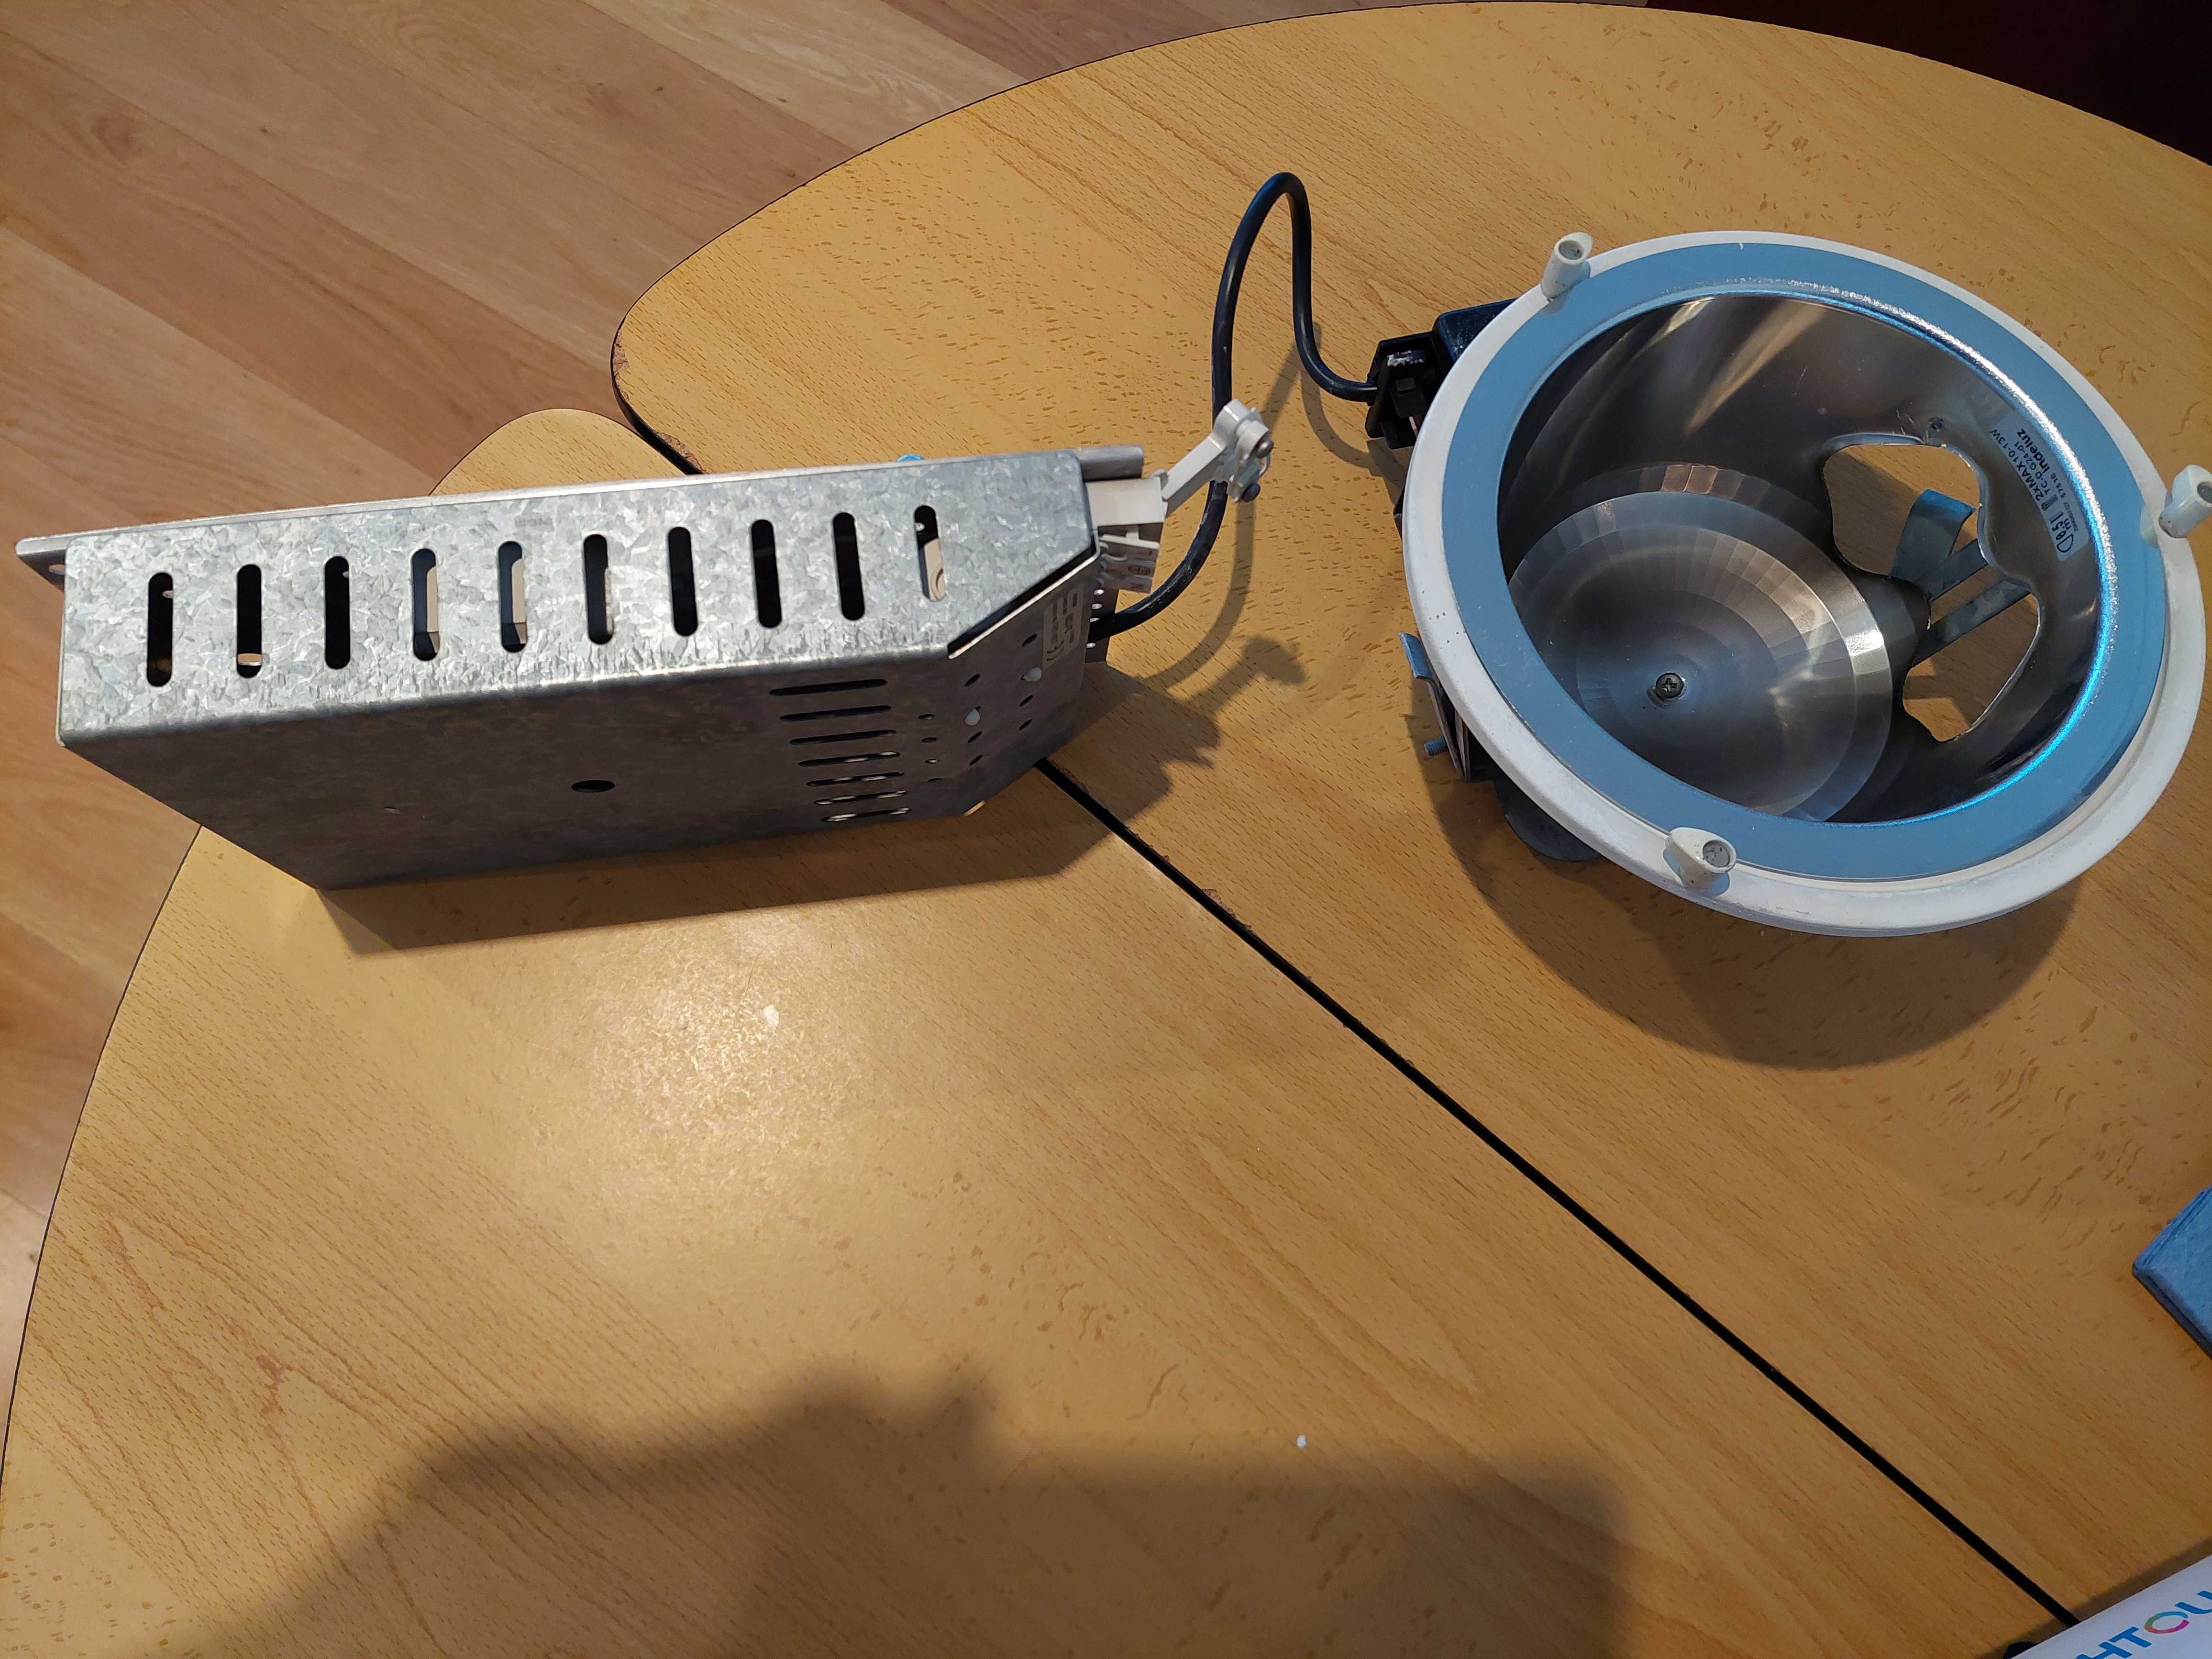 Plafom (2 lâmpadas)-20 cm diâmetro-completo-Patamares, cozinhas, etc.